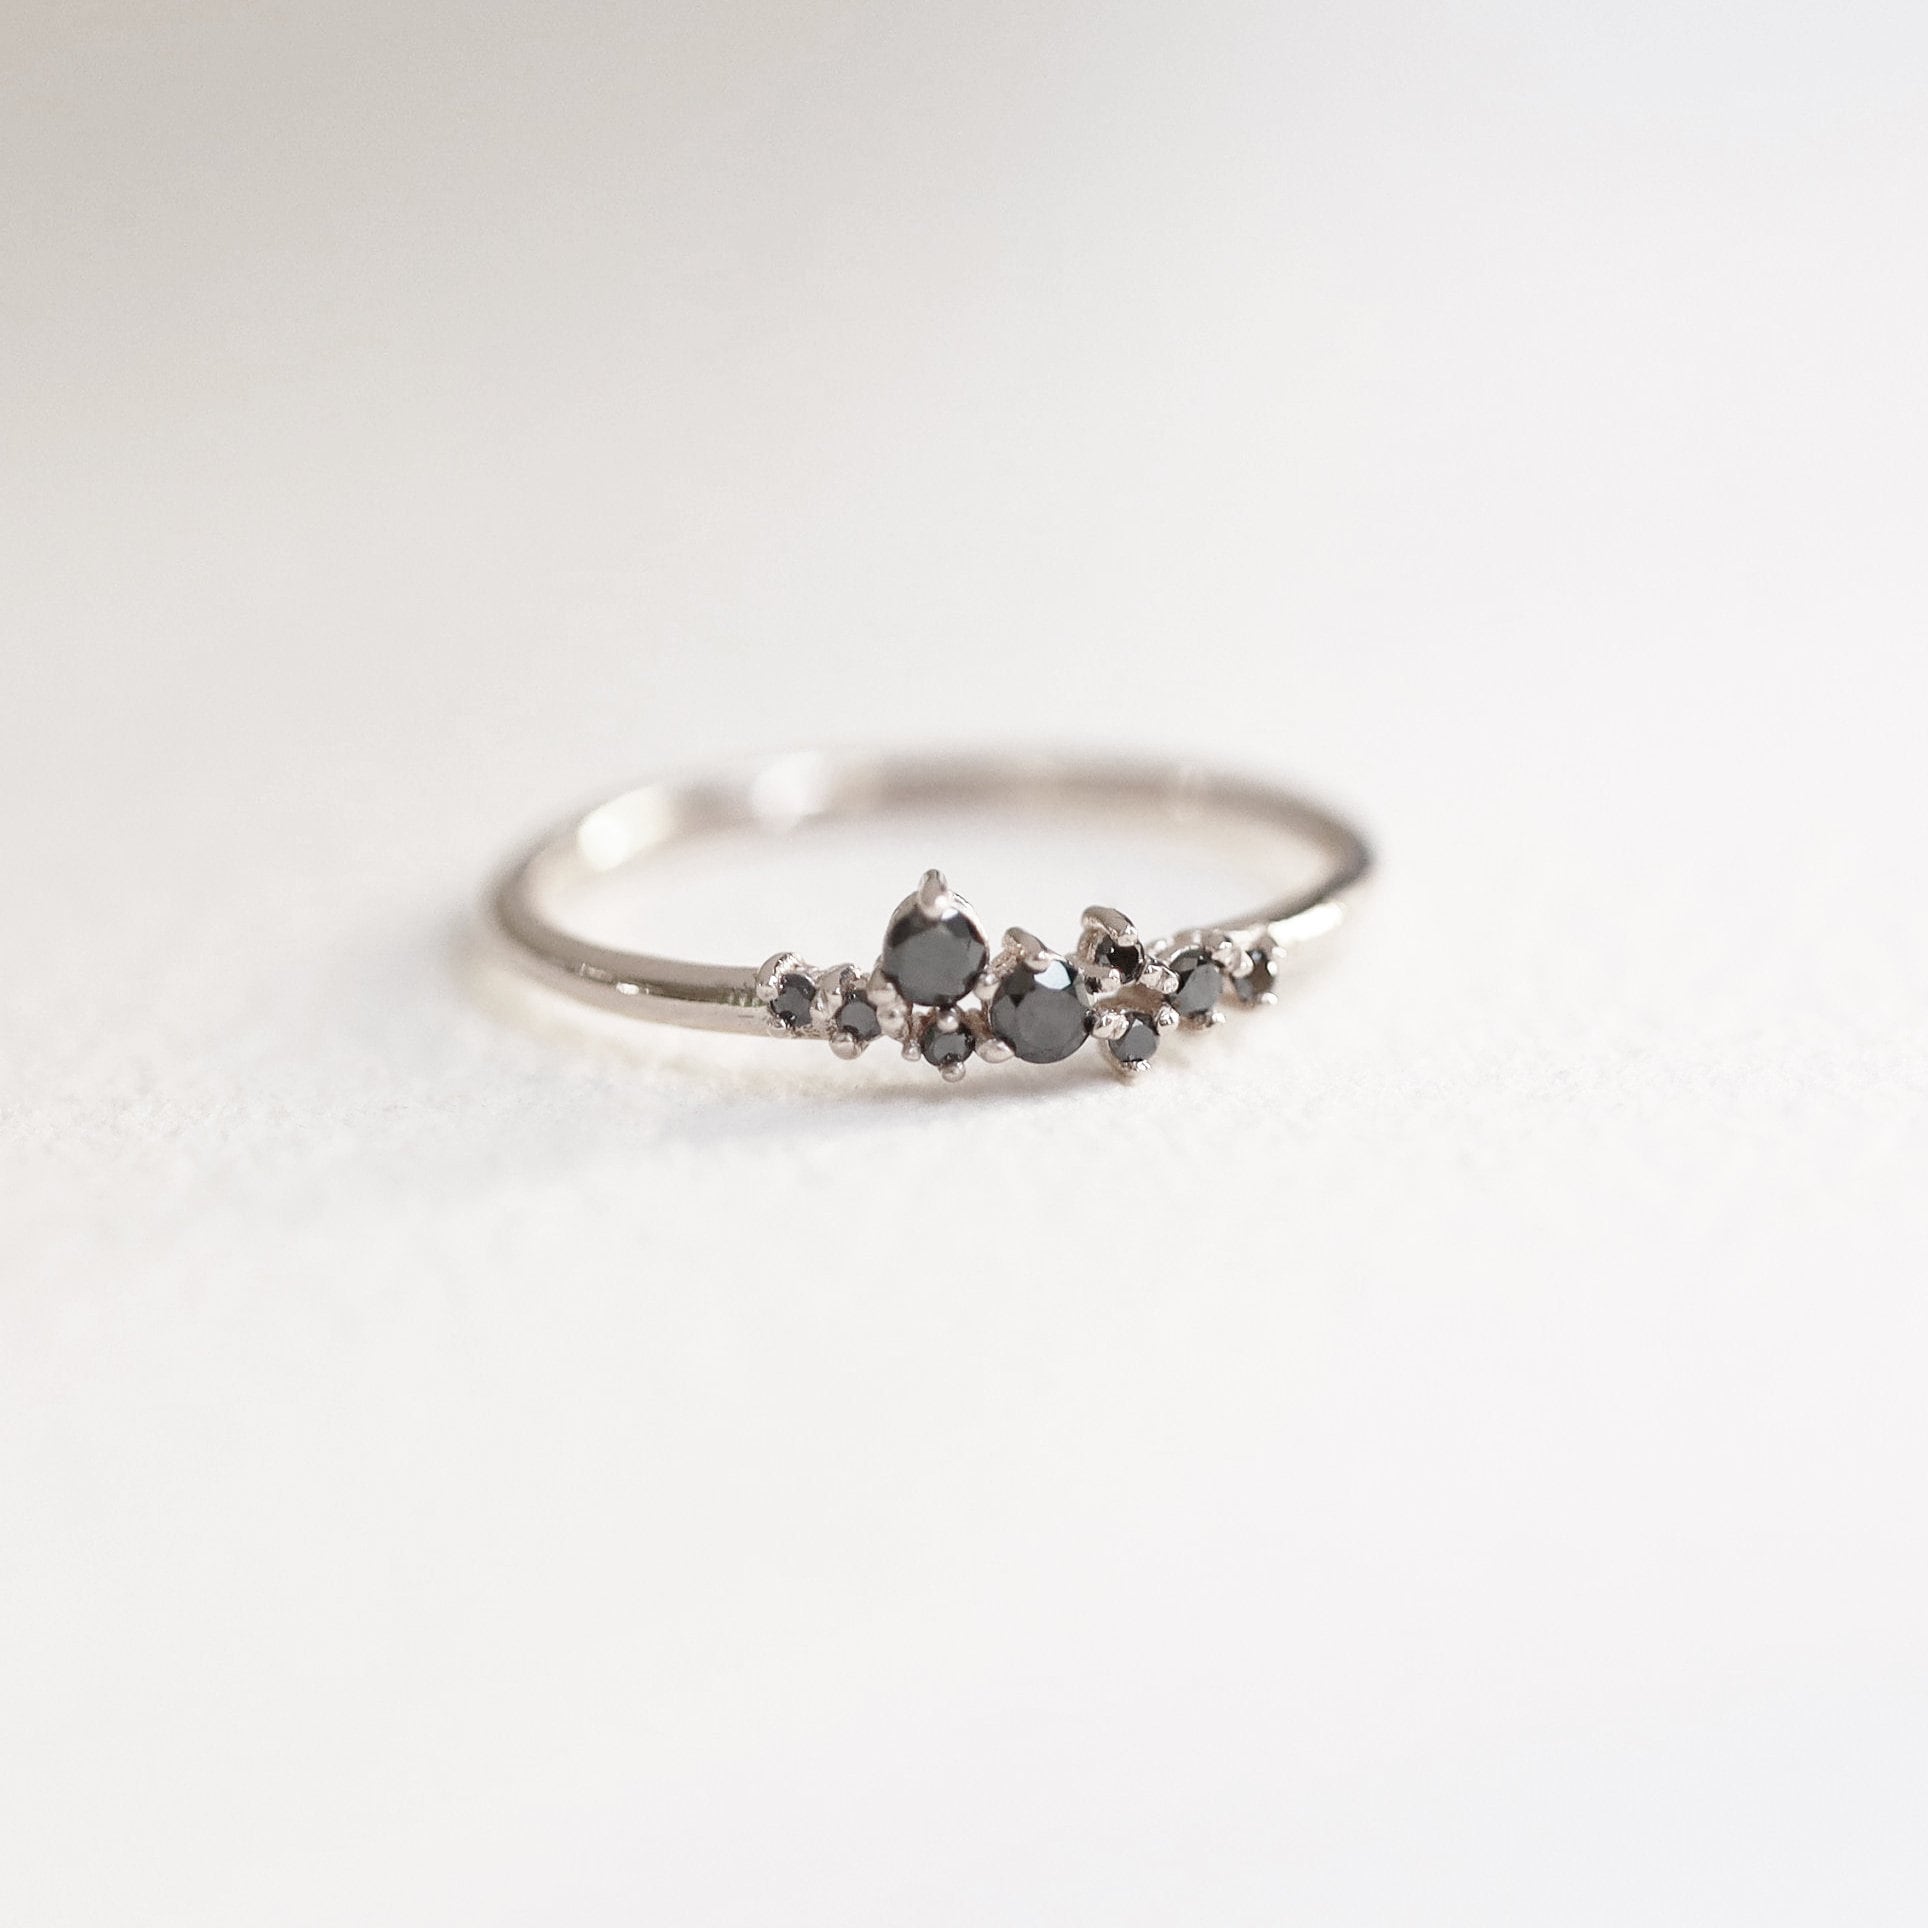 Minimalistische Zwarte Diamanten Ring Sieraden Ringen Ringen met meerdere stenen Zwarte Diamant Trouwring Cluster Zwarte Diamant Ring Zwarte Diamanten Cluster Ring Zwarte Diamanten Ring 